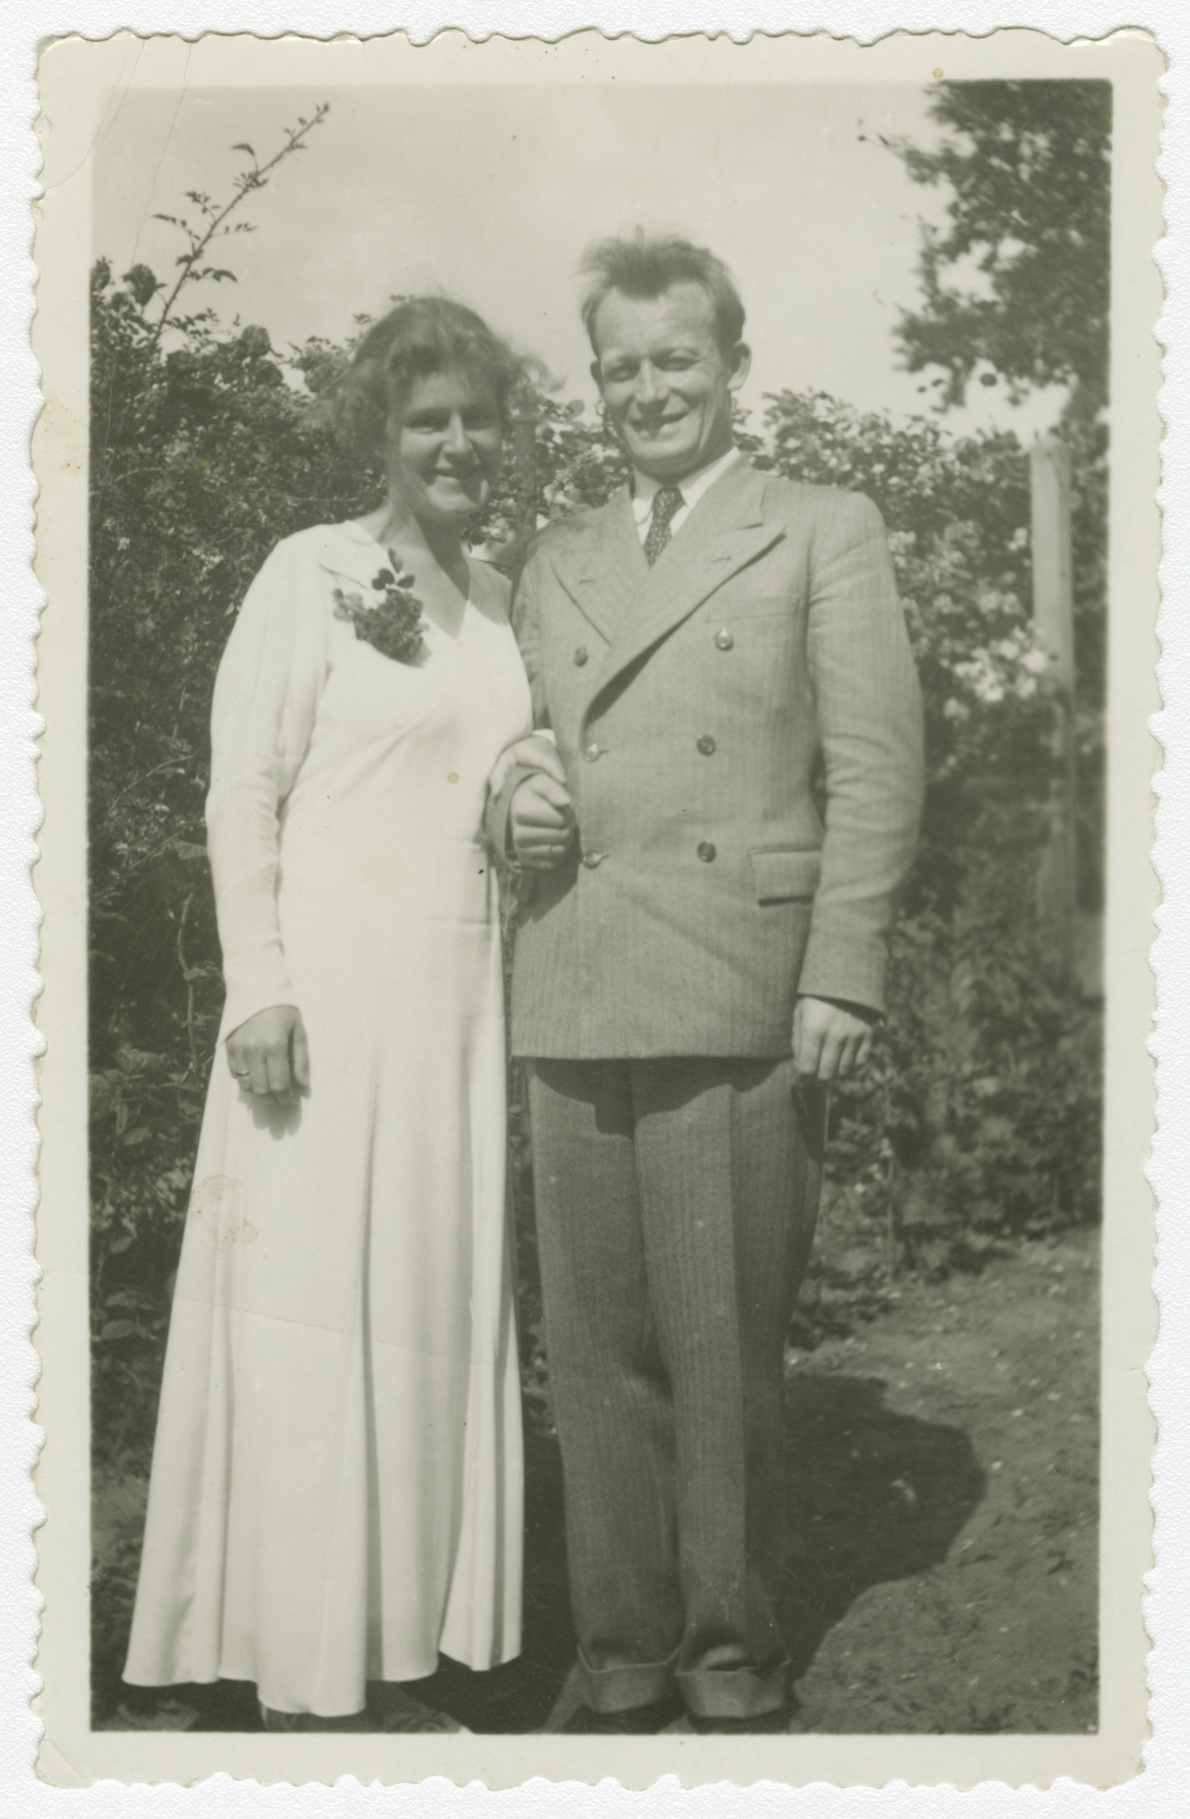 Hochzeitsfoto Rosemarie (Pallat) und Adolf Reichwein, April 1933. DIPF/BBF/Archiv: REICH ALBUM FOTO 0163